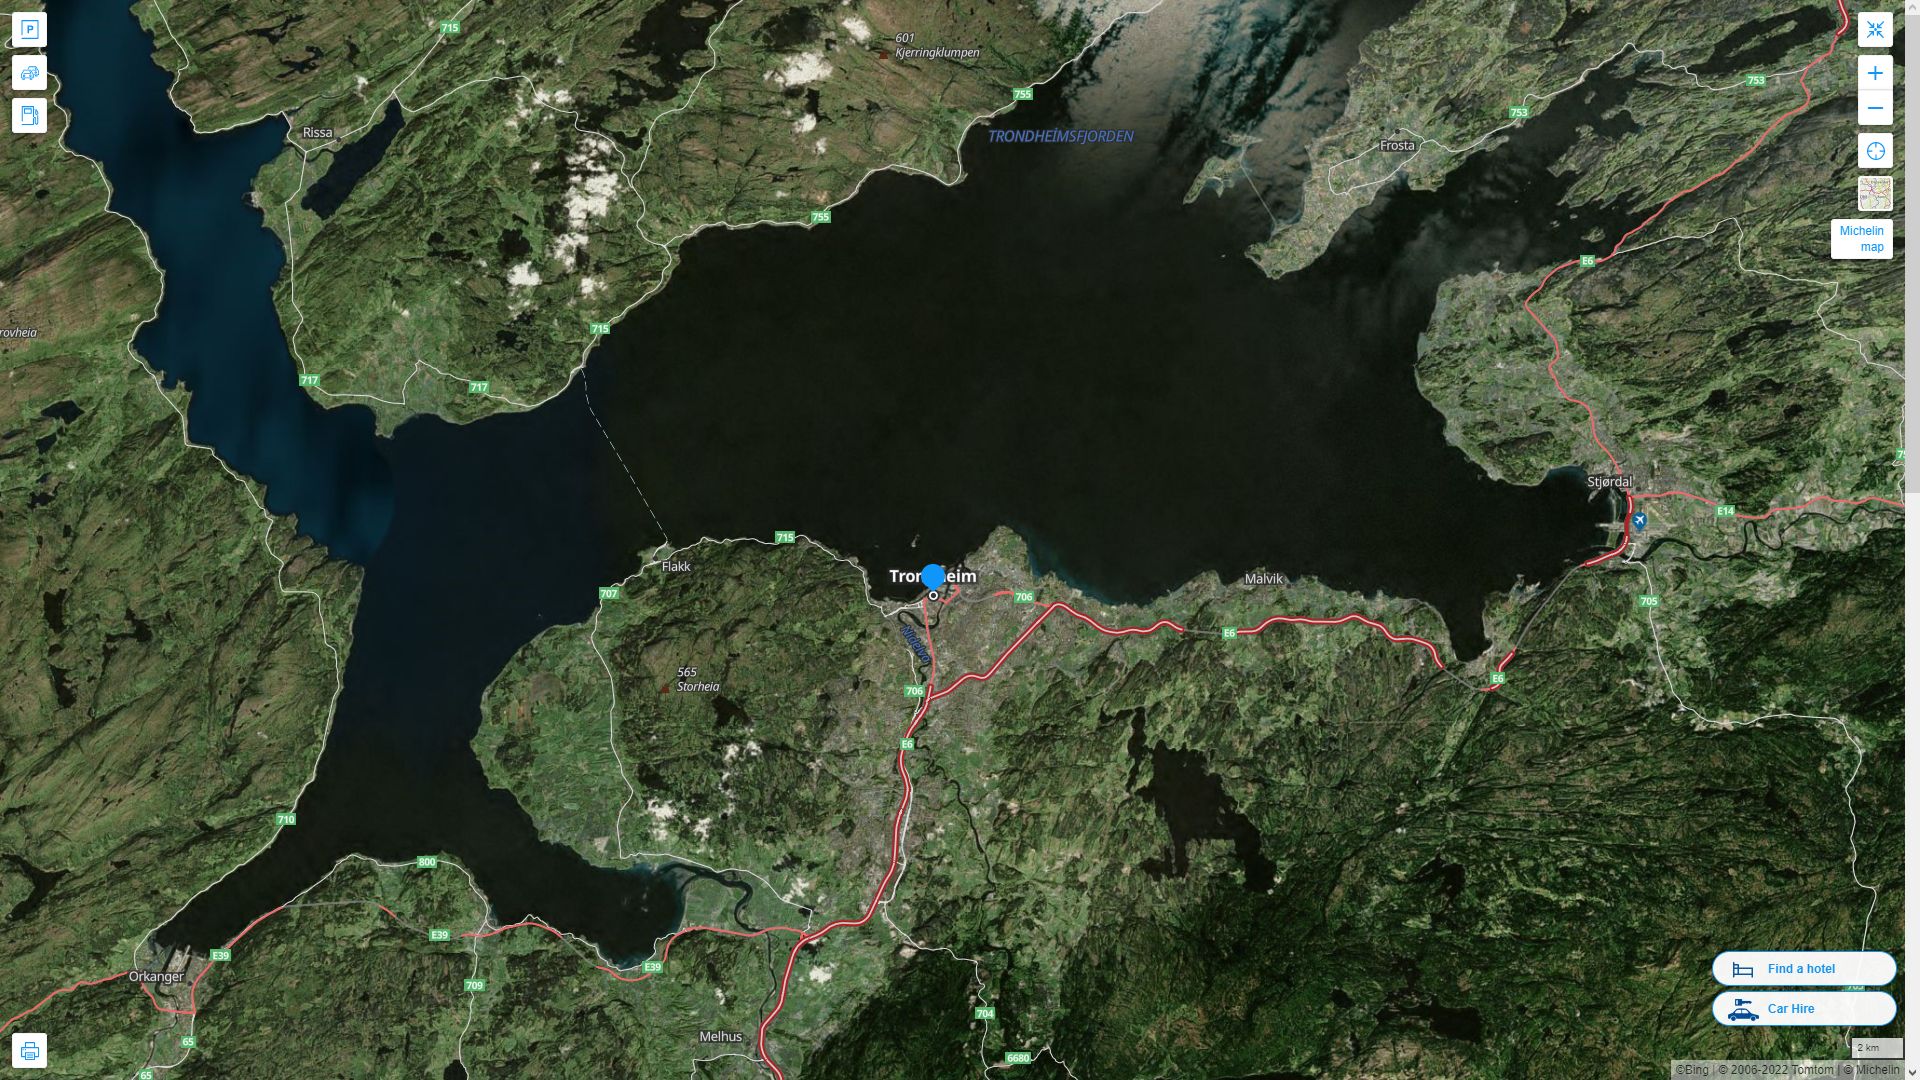 Trondheim Norvege Autoroute et carte routiere avec vue satellite